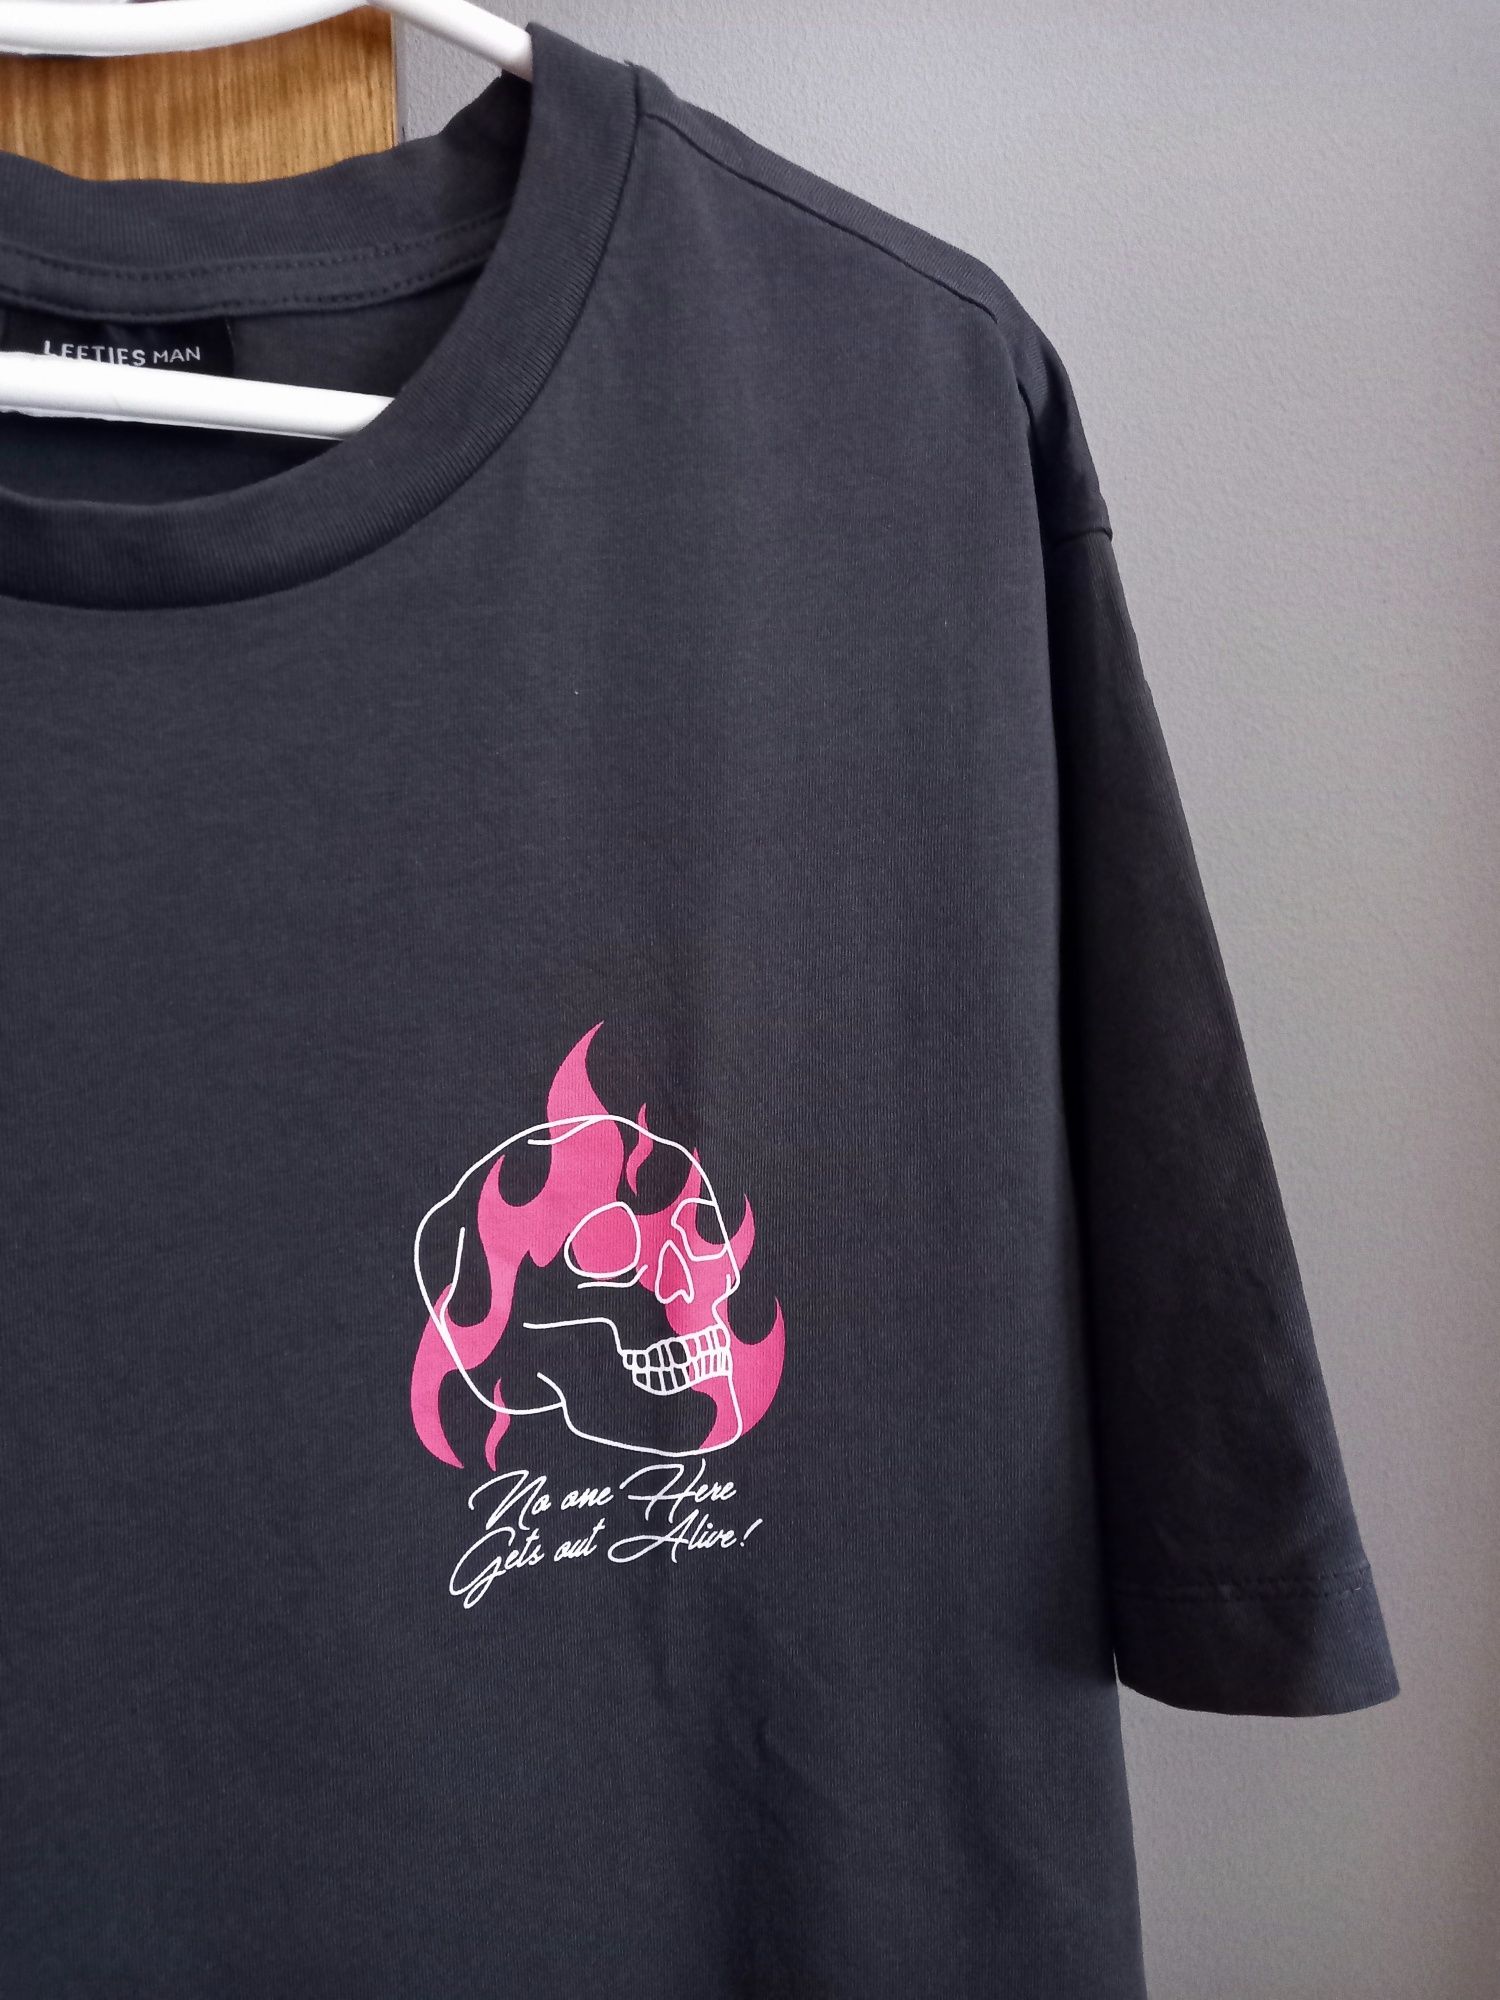 T-shirt c/ motivo caveira em chamas / tam S